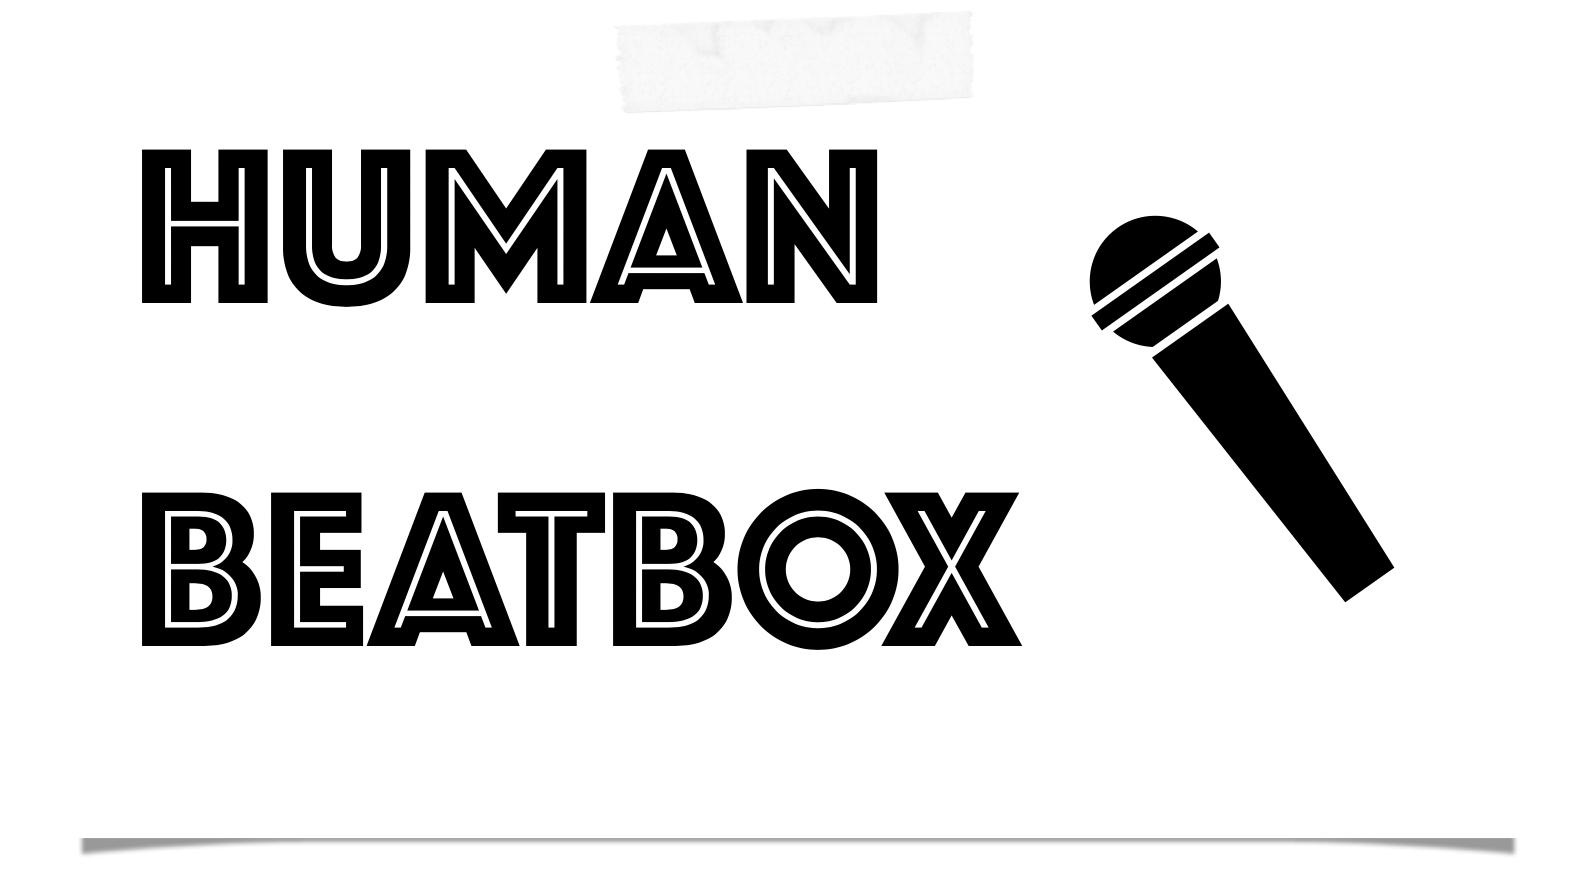 ヒューマンビートボックス Humanbeatbox 用の機材をお探しなら当店へ 必要な機材をおススメを交えて一挙紹介 島村楽器 名古屋パルコ店